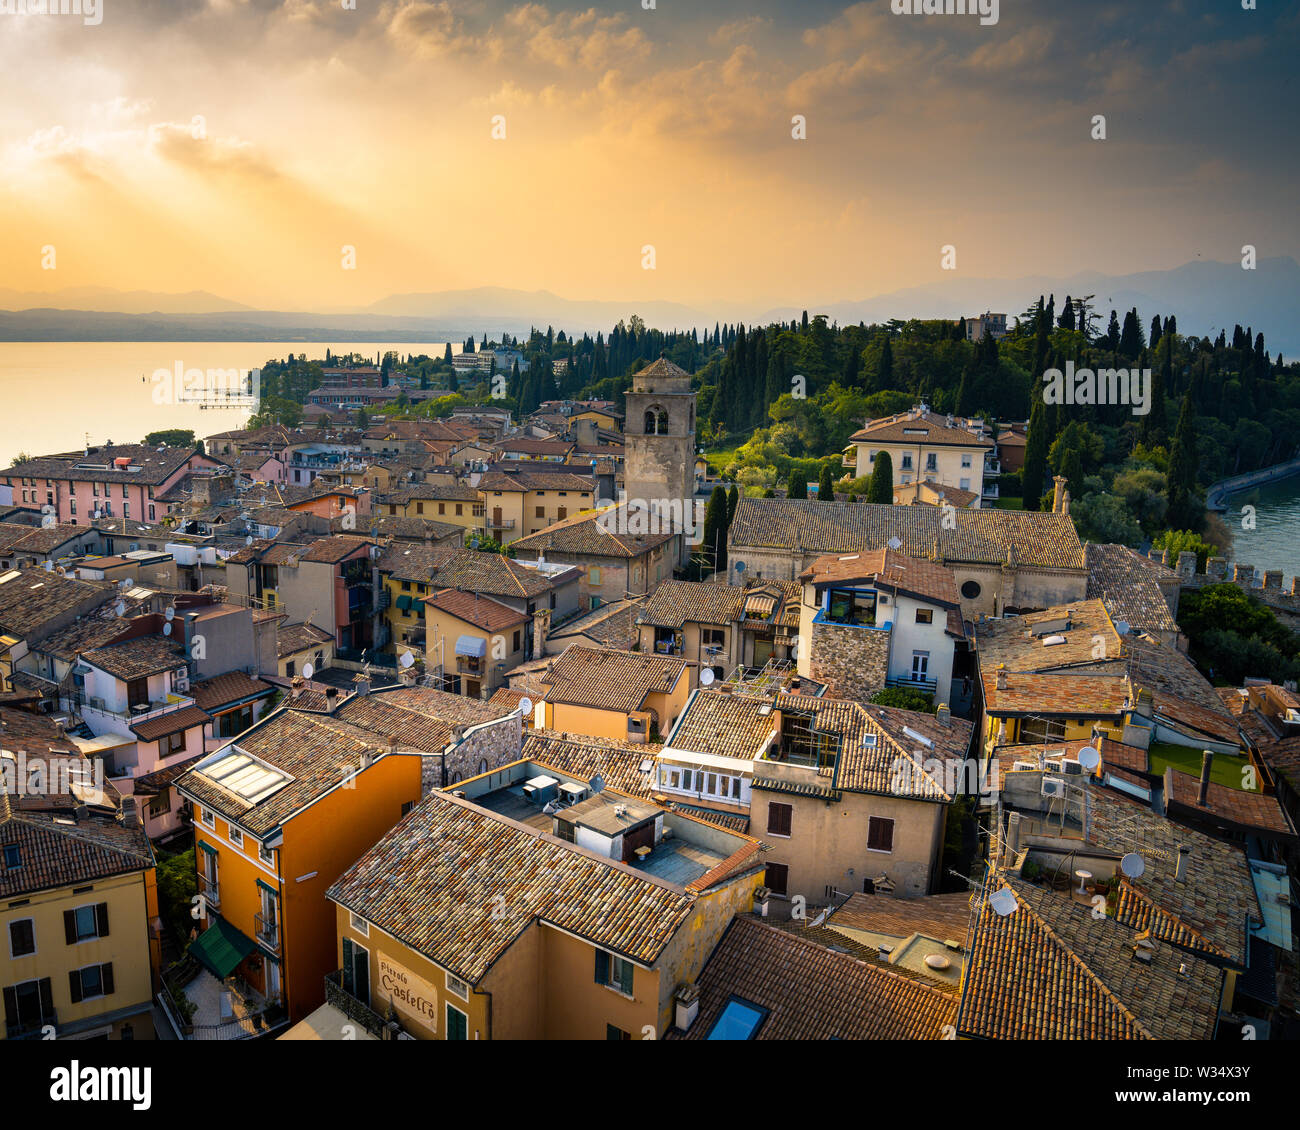 The beautiful Sirmione, Lake Garda, Italy Stock Photo